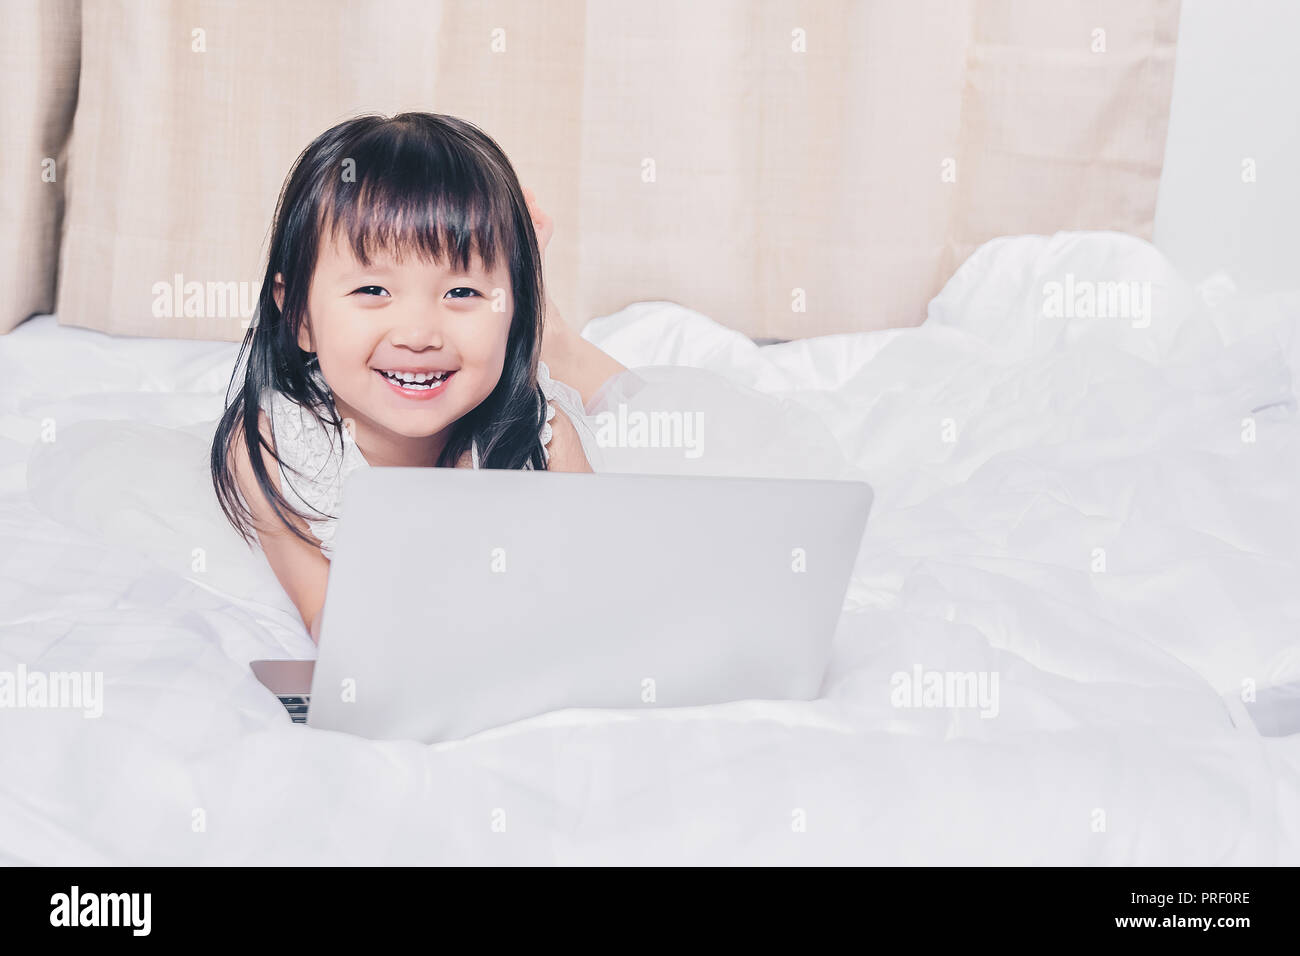 Kleines Mädchen liegt mit Laptop auf dem Bett glücklich lächelnd über das Internet ansehen und Spaß haben, in Beziehung mit Technologie Konzept Stockfoto